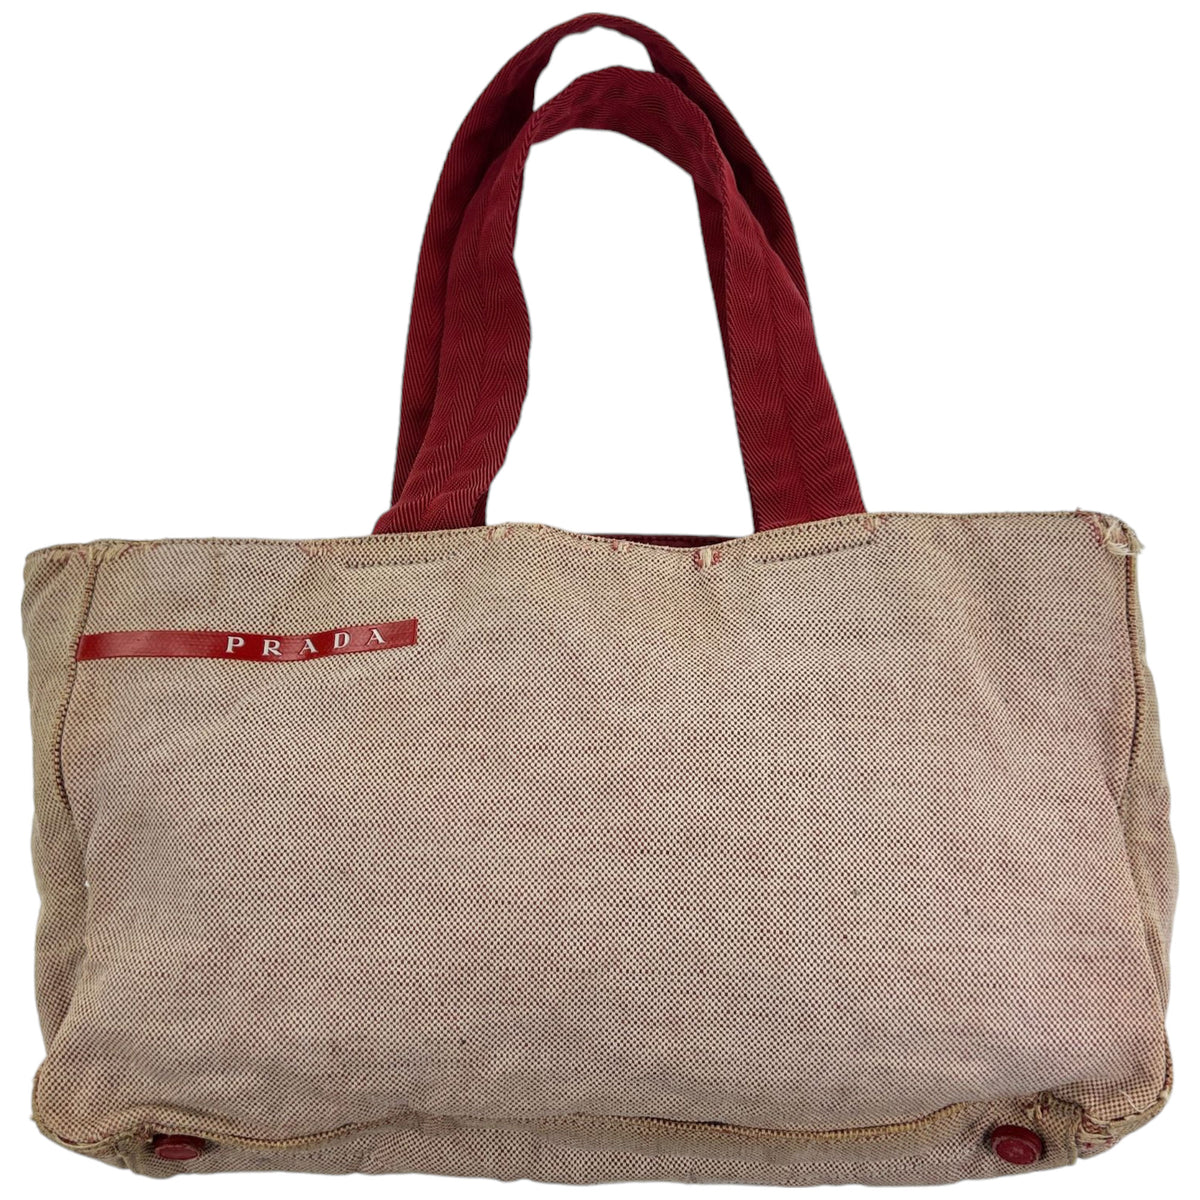 Vintage 1999 Prada Tote Bag